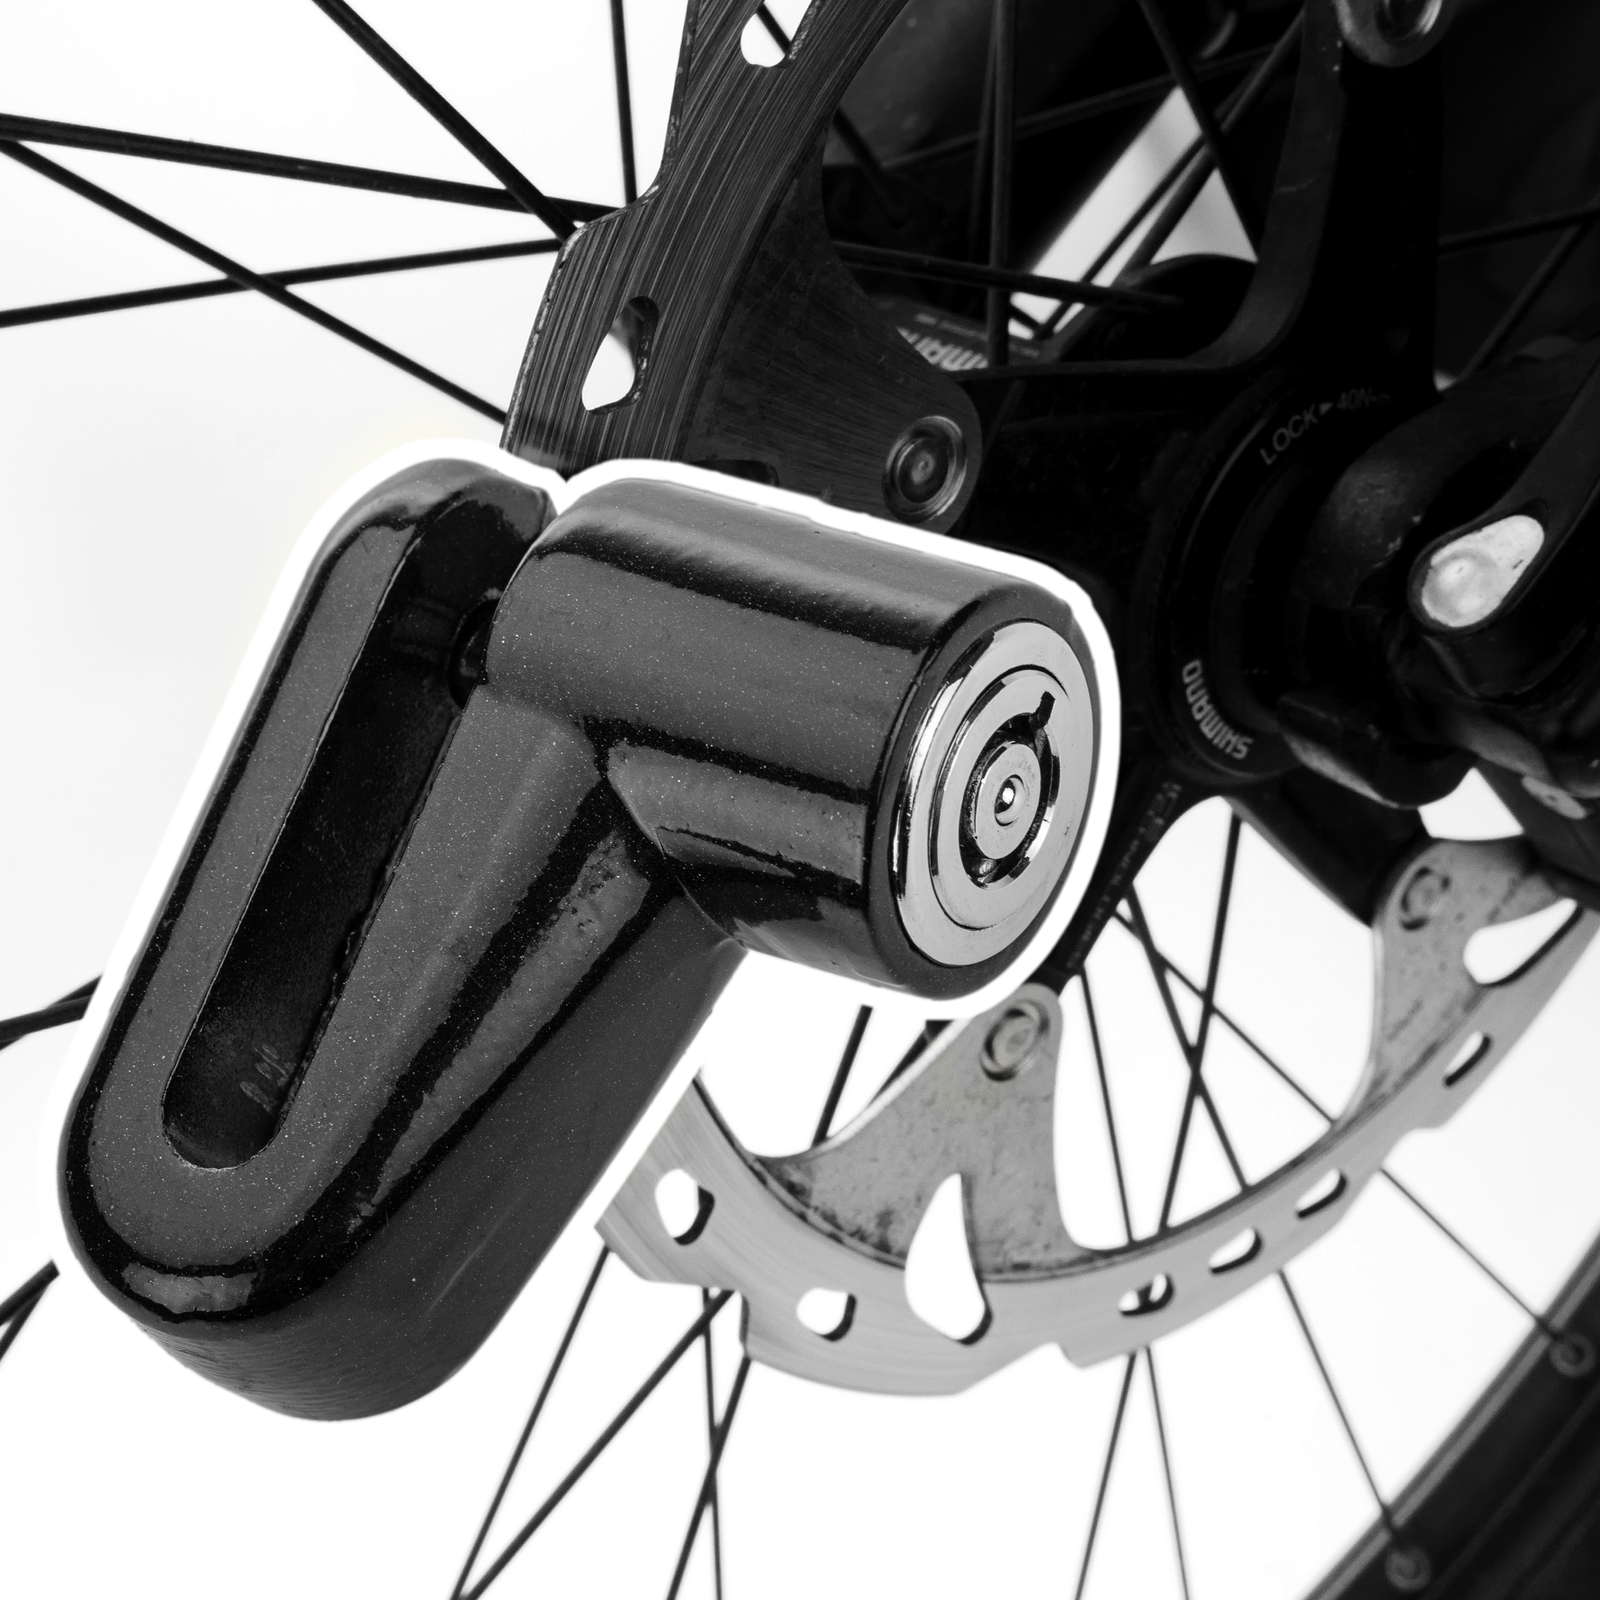 Motorcycle Bike Safety Anti-Theft Disc Brake Lock with Two Keys for Motorcycle Disc Brake Lock Road Bicycle Mountain Bike